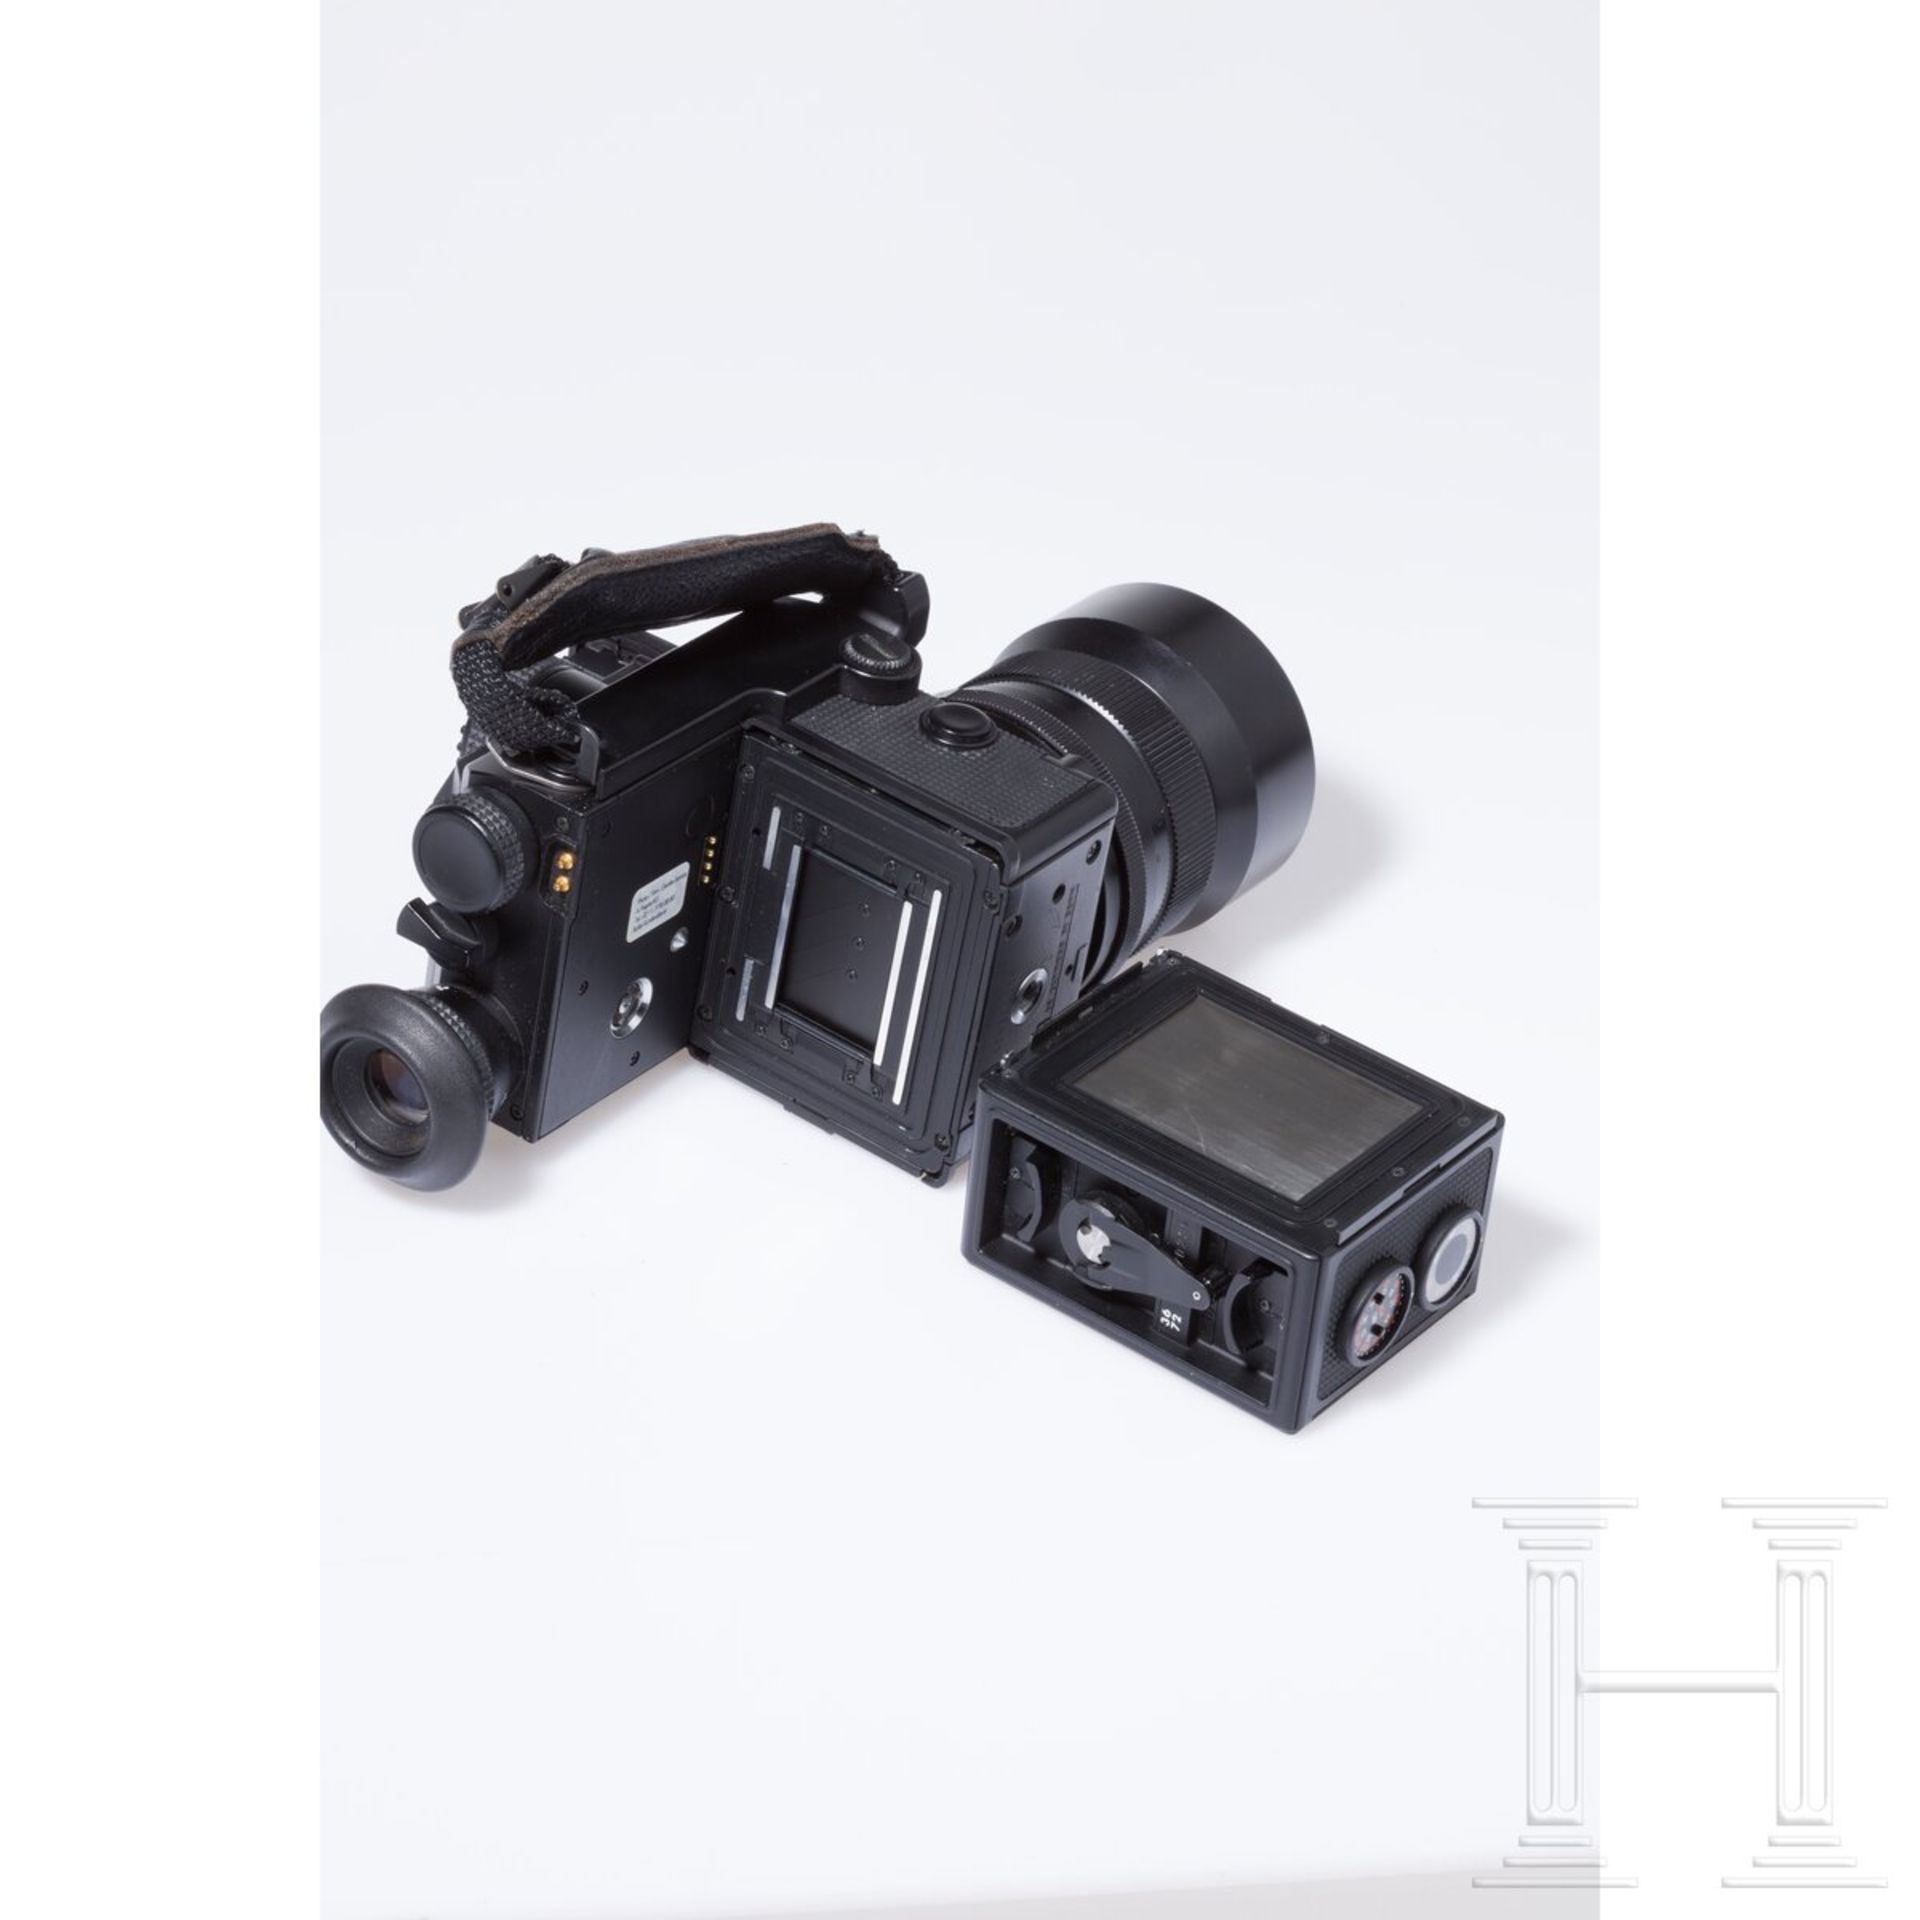 Kamera Rolleiflex 3003 mit Carl Zeiss Distagon 1,4 / 35 - Image 5 of 10